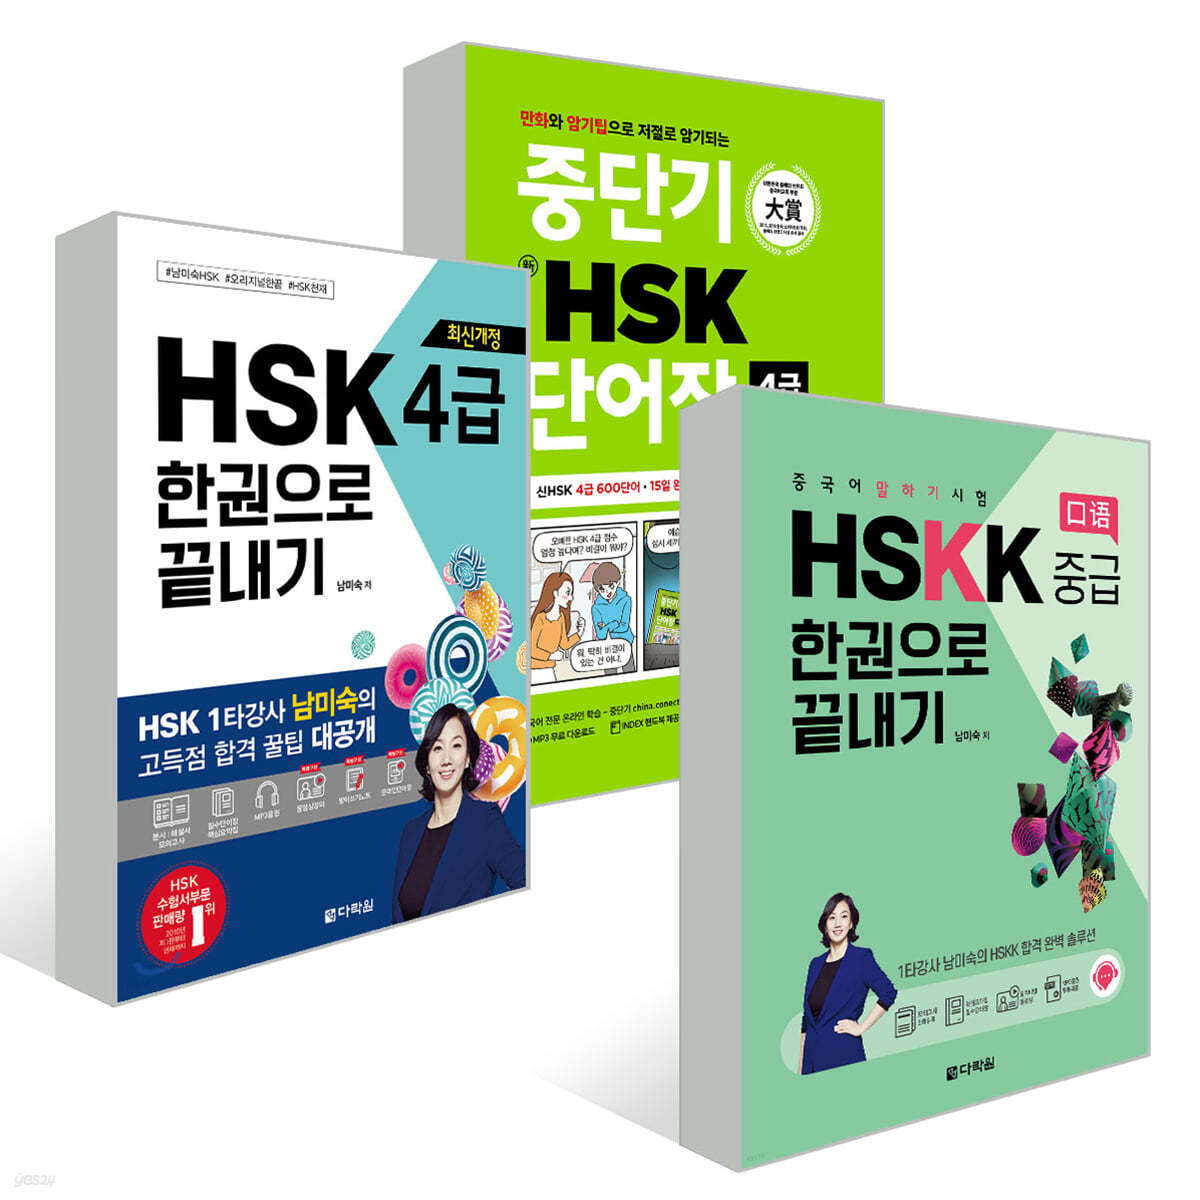 중단기 신 HSK 단어장 4급 + 최신개정 HSK 4급 한권으로 끝내기 + 중국어 말하기 시험 HSKK 중급 한권으로 끝내기